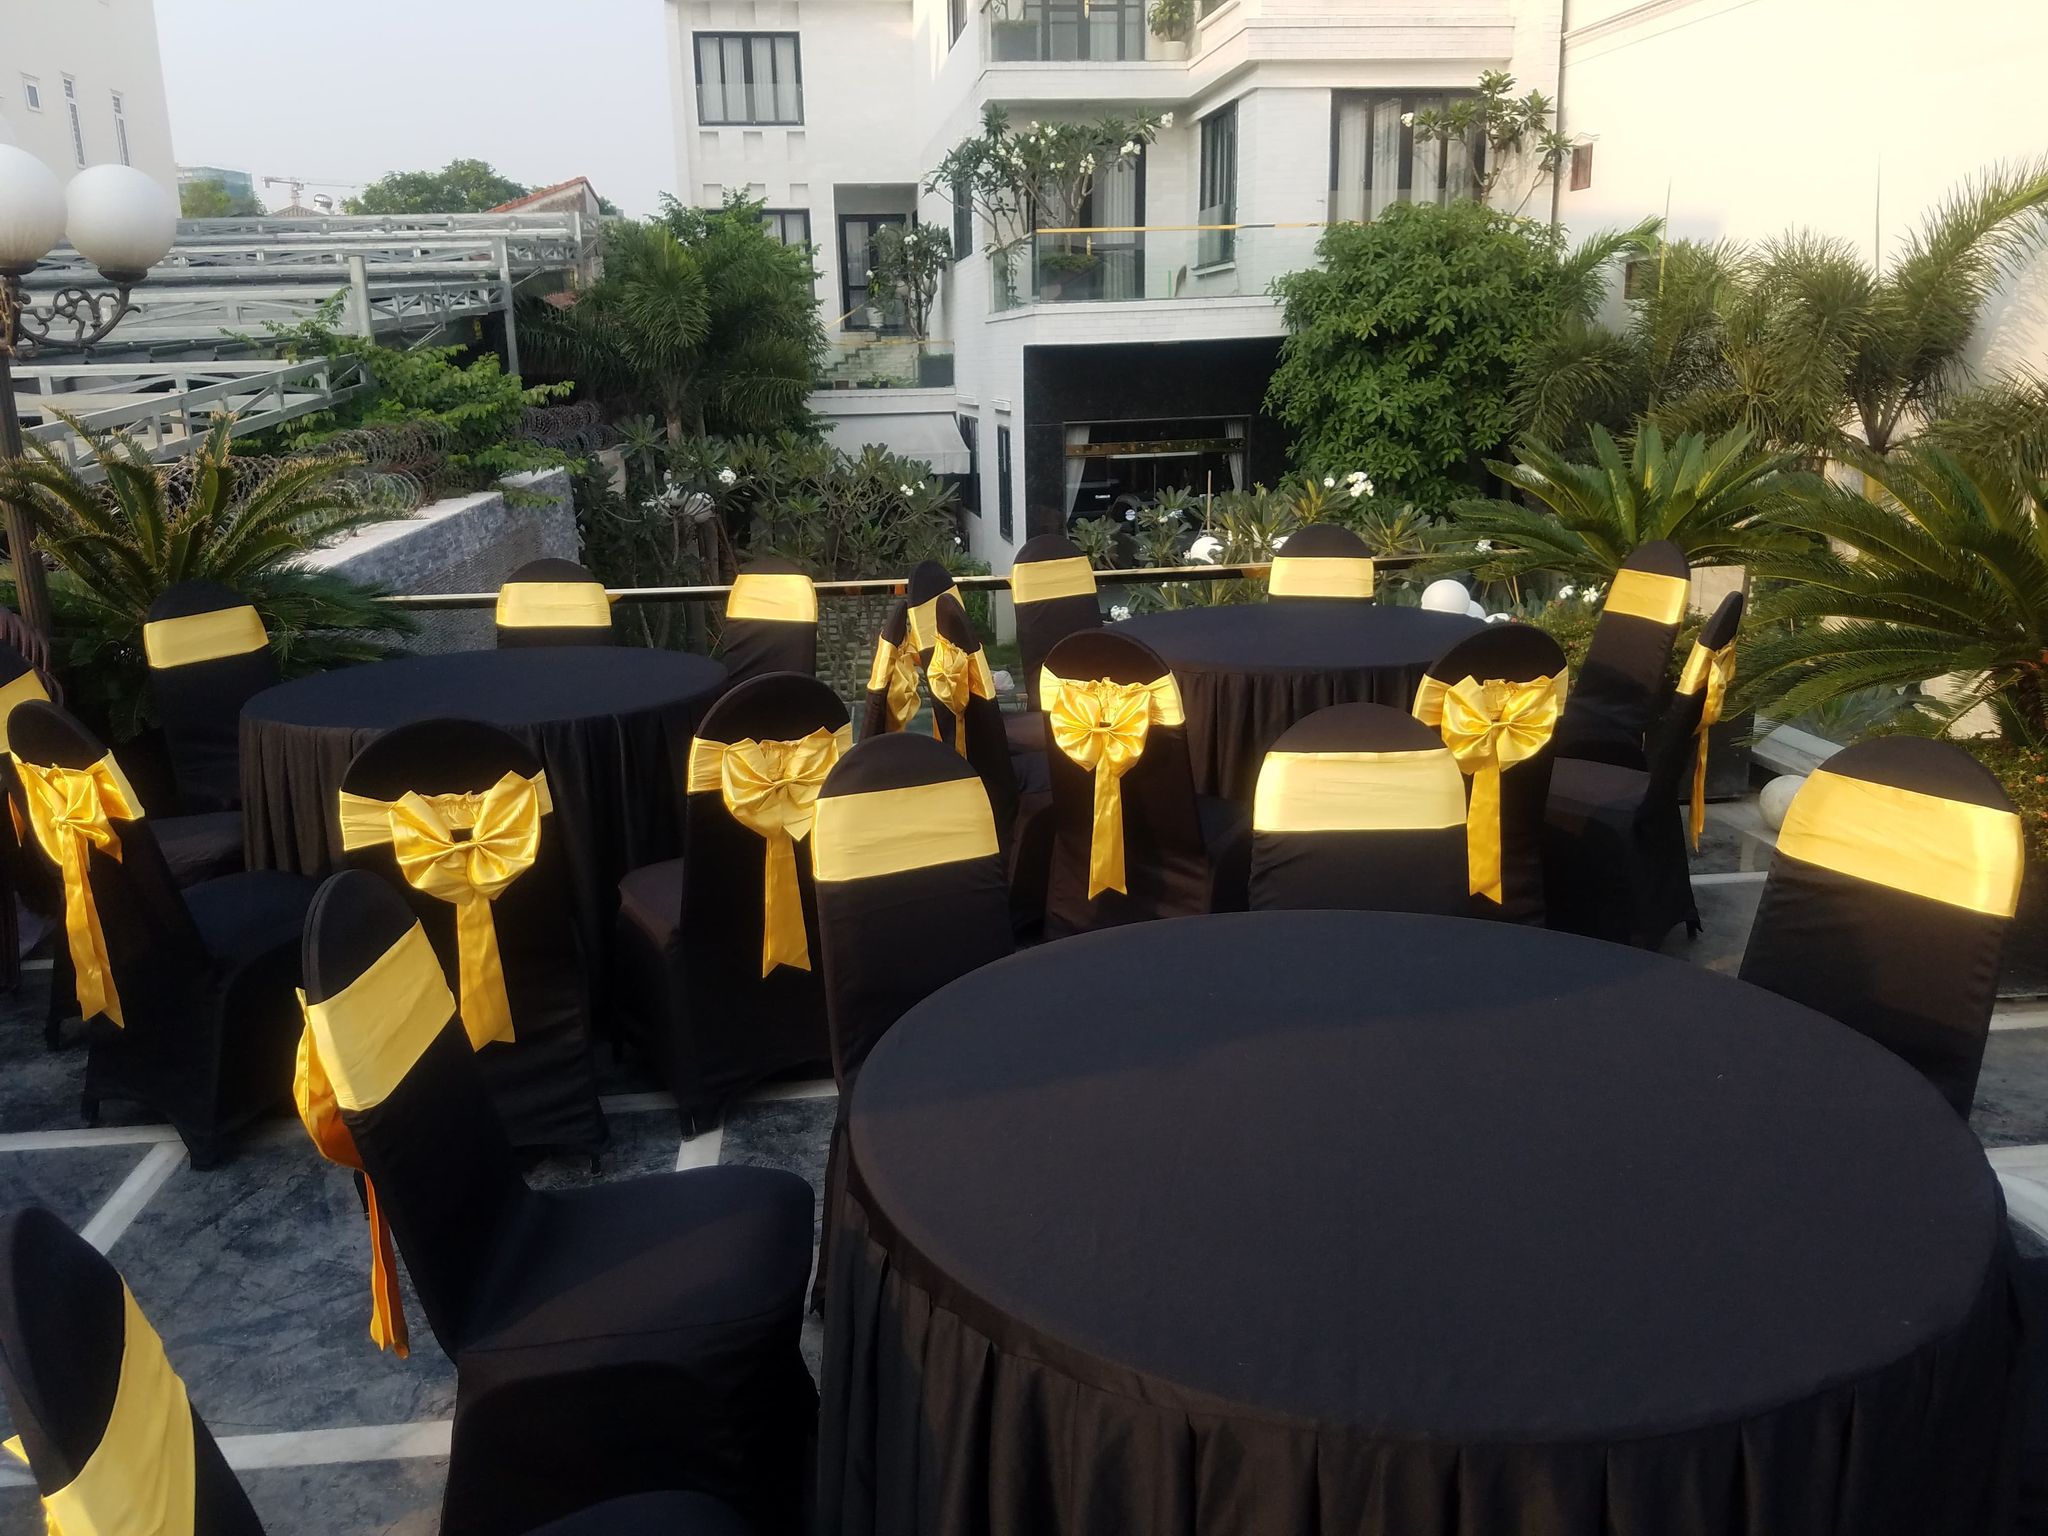 Cho thuê bàn ghế quận Gò Vấp sự kiện hội nghị đám cưới